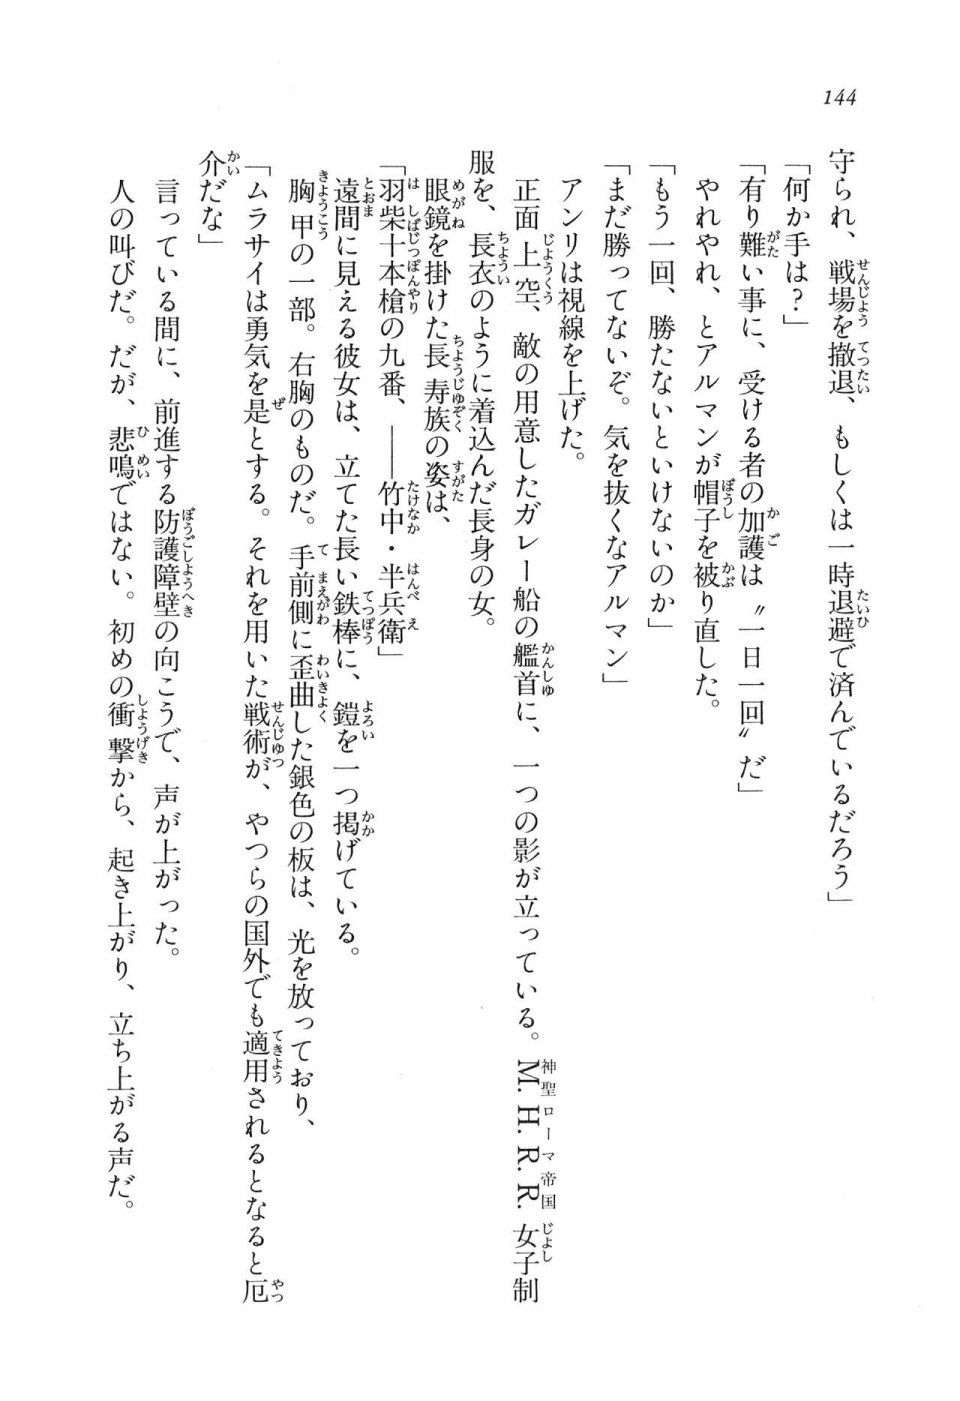 Kyoukai Senjou no Horizon LN Vol 11(5A) - Photo #144